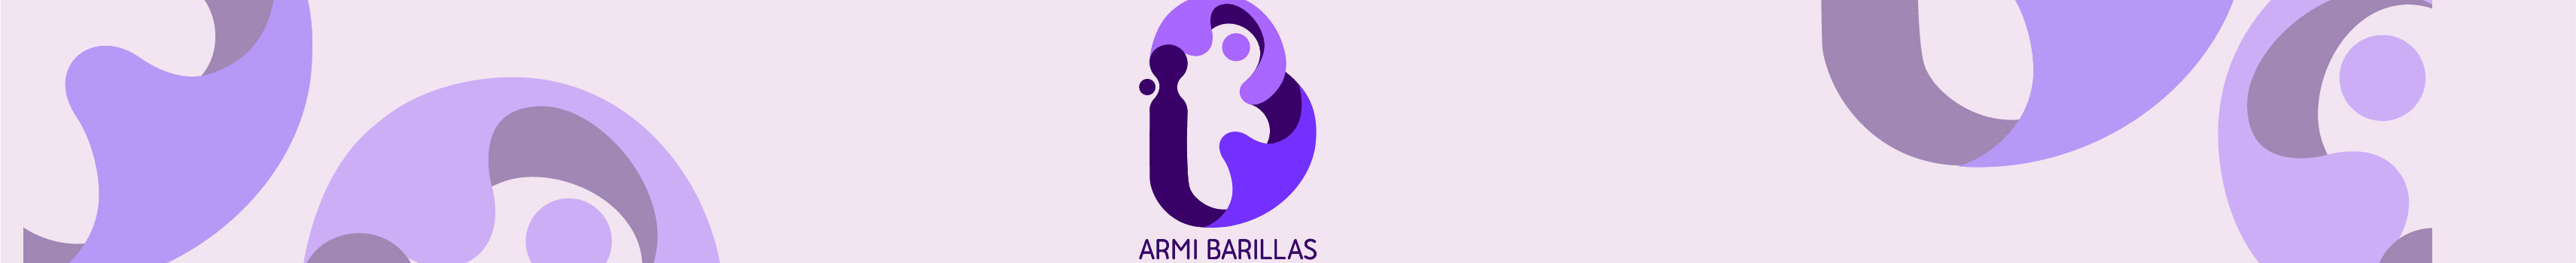 Armi Barillas's profile banner